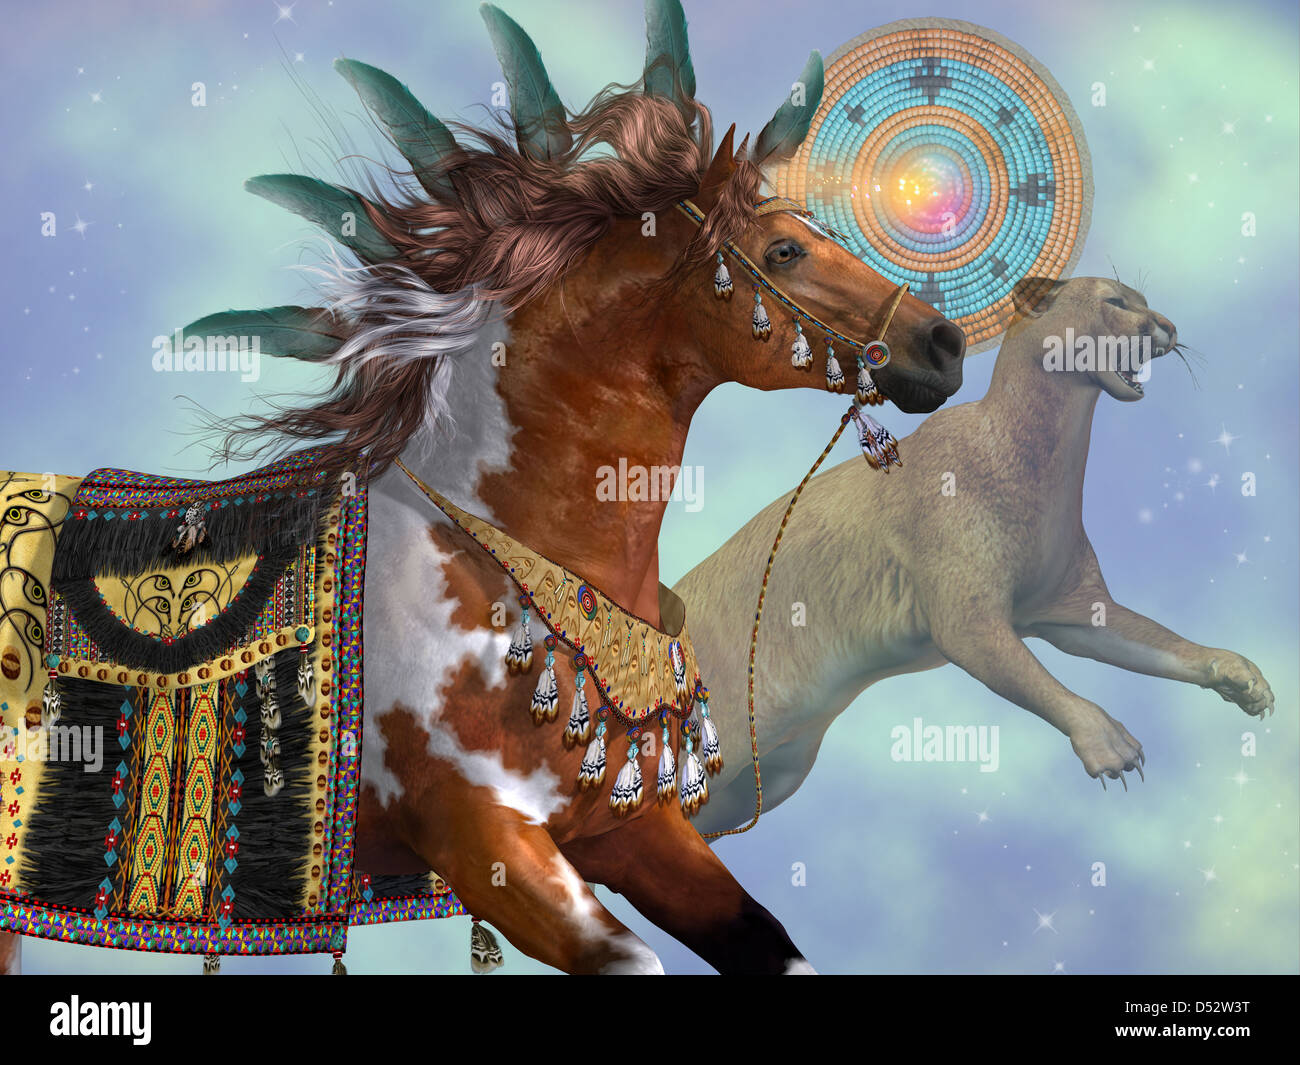 Un cheval et un chat cougar sont des symboles de la culture amérindienne. Banque D'Images